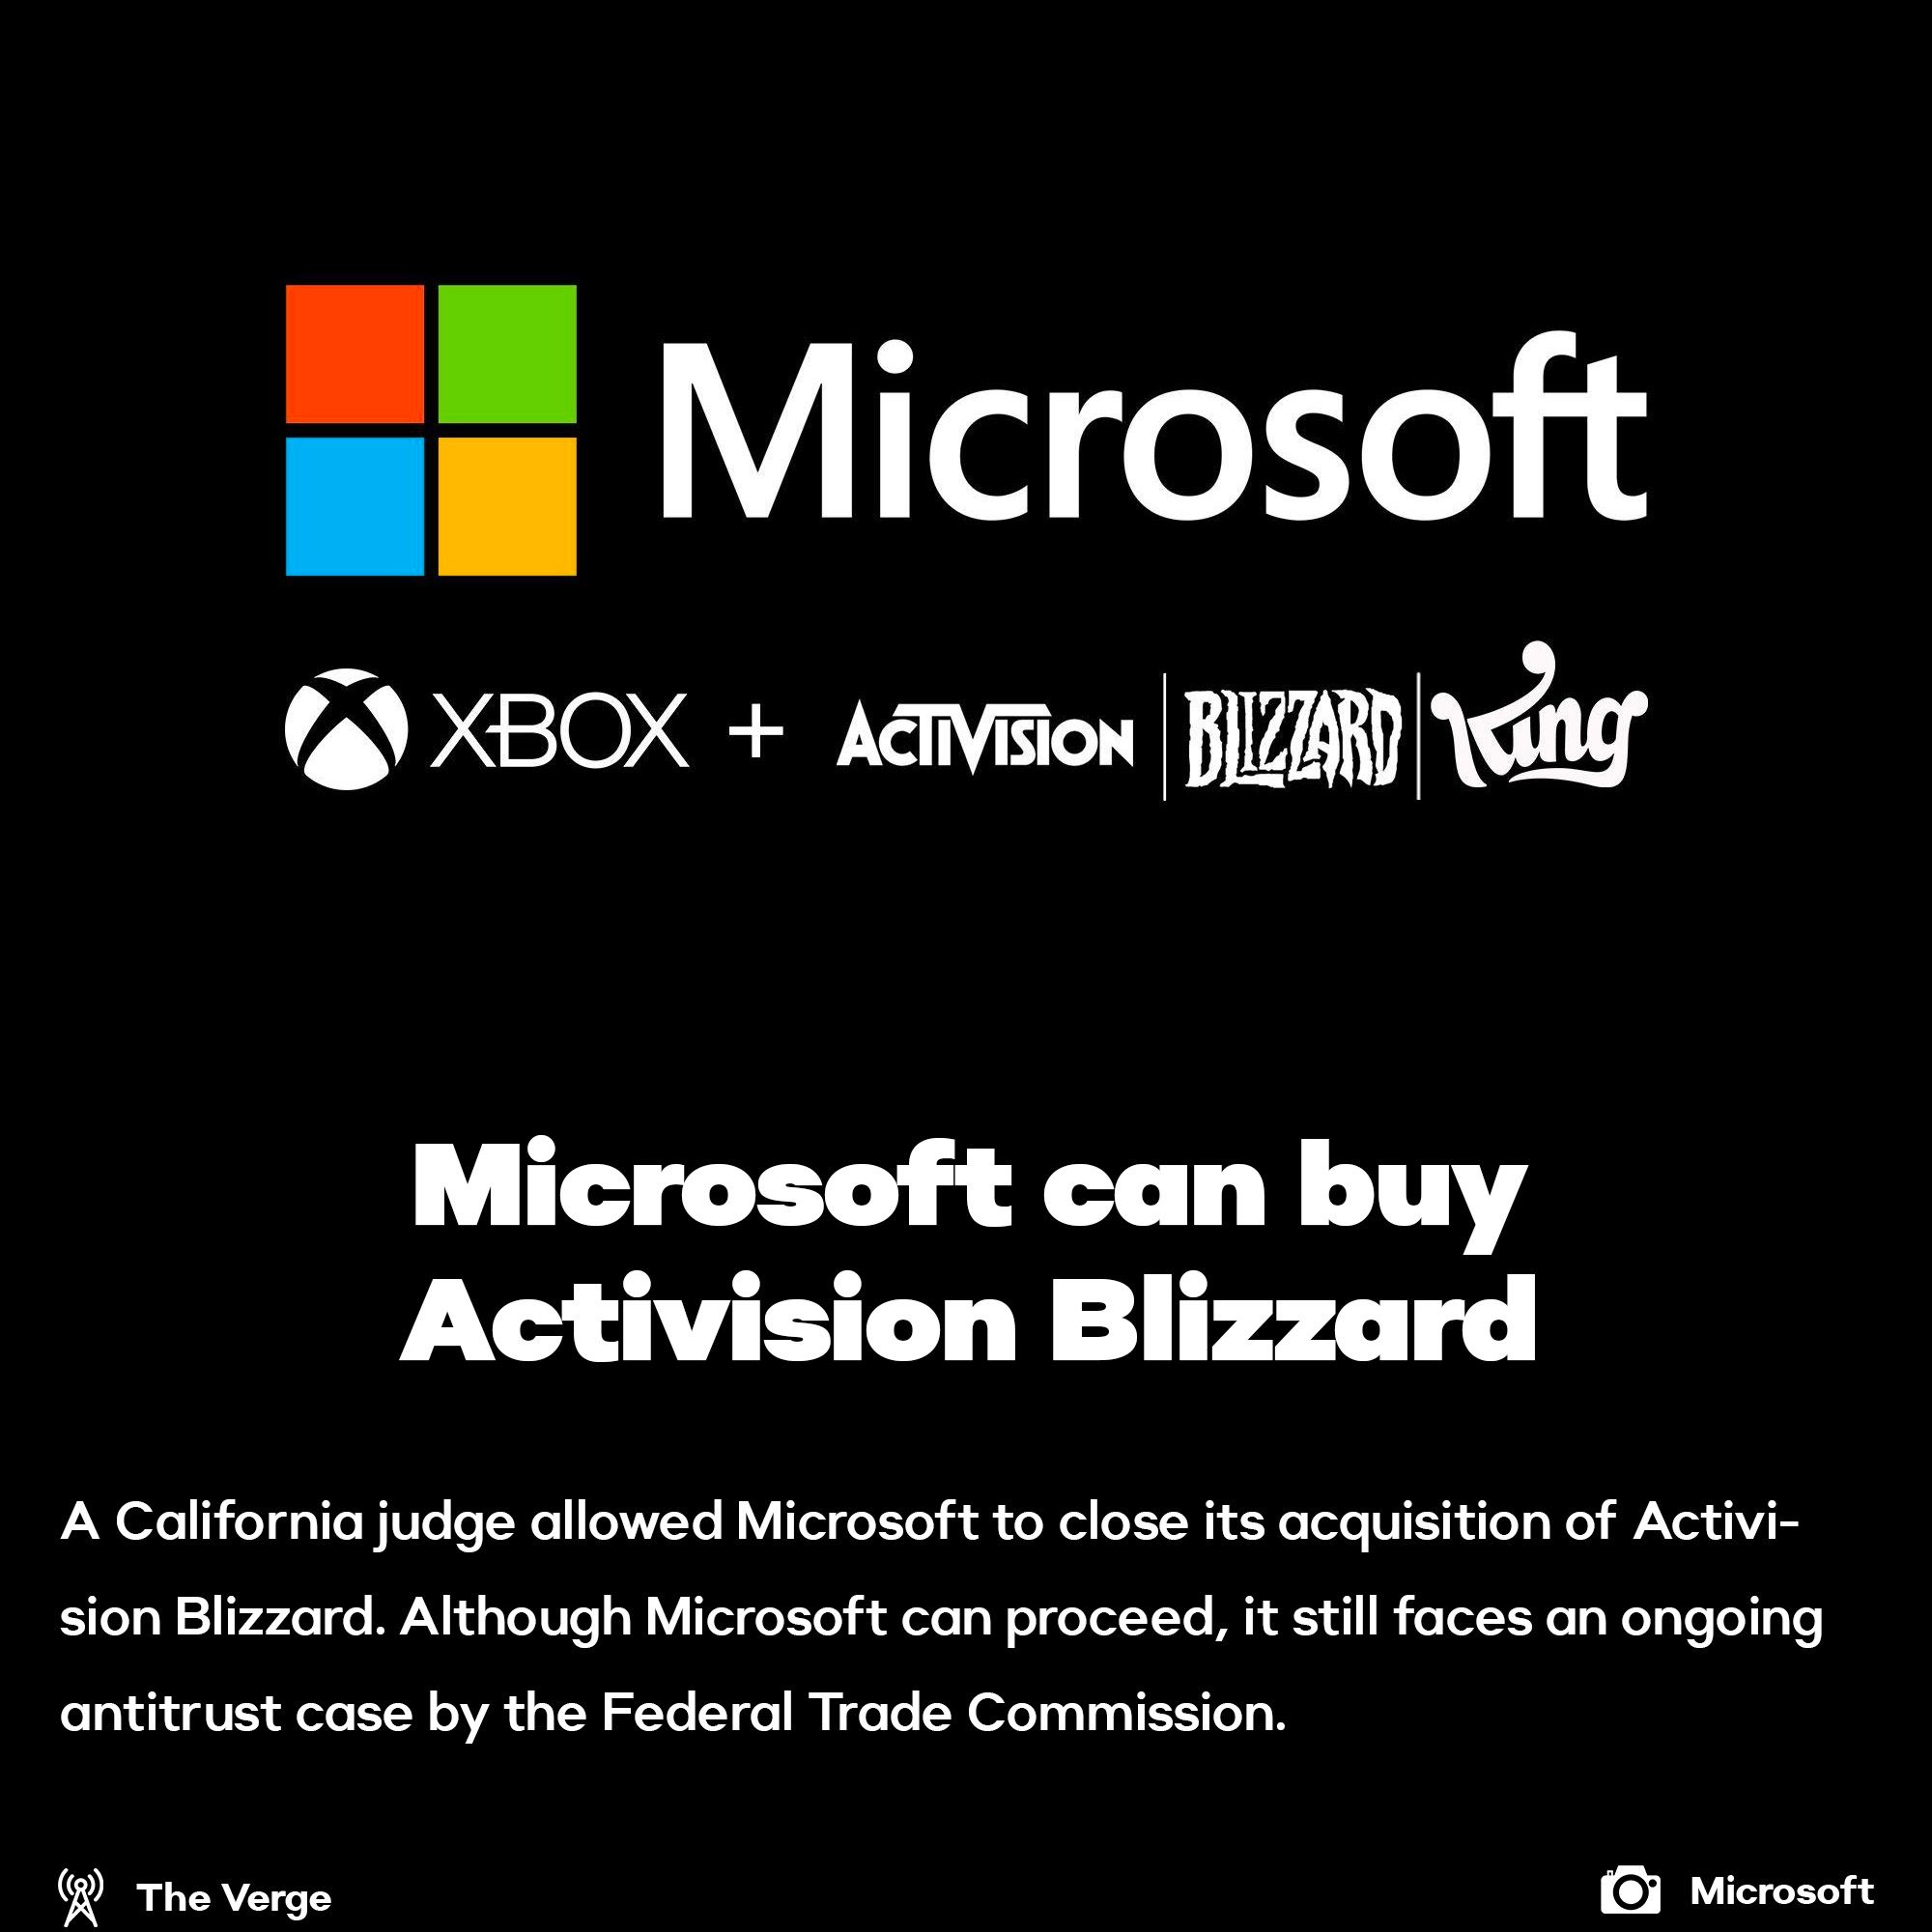 Microsoft can acquire Activision Blizzard